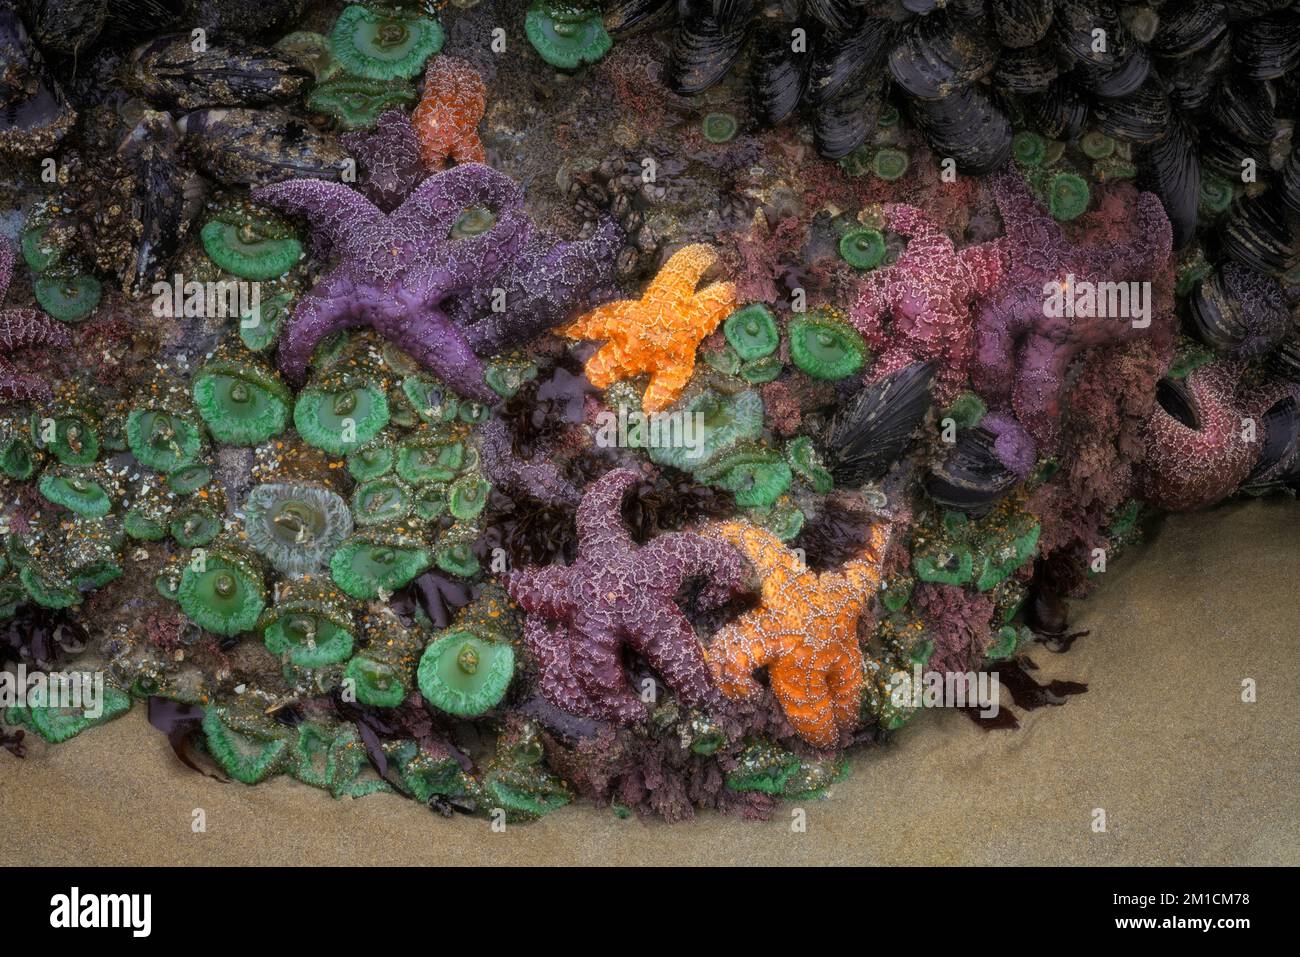 Des barnacles d'oie, des étoiles de mer colorées et des anémones de mer vertes s'accrochent aux roches de basalte pendant cet été temporaire moins événement de marée basse. Banque D'Images